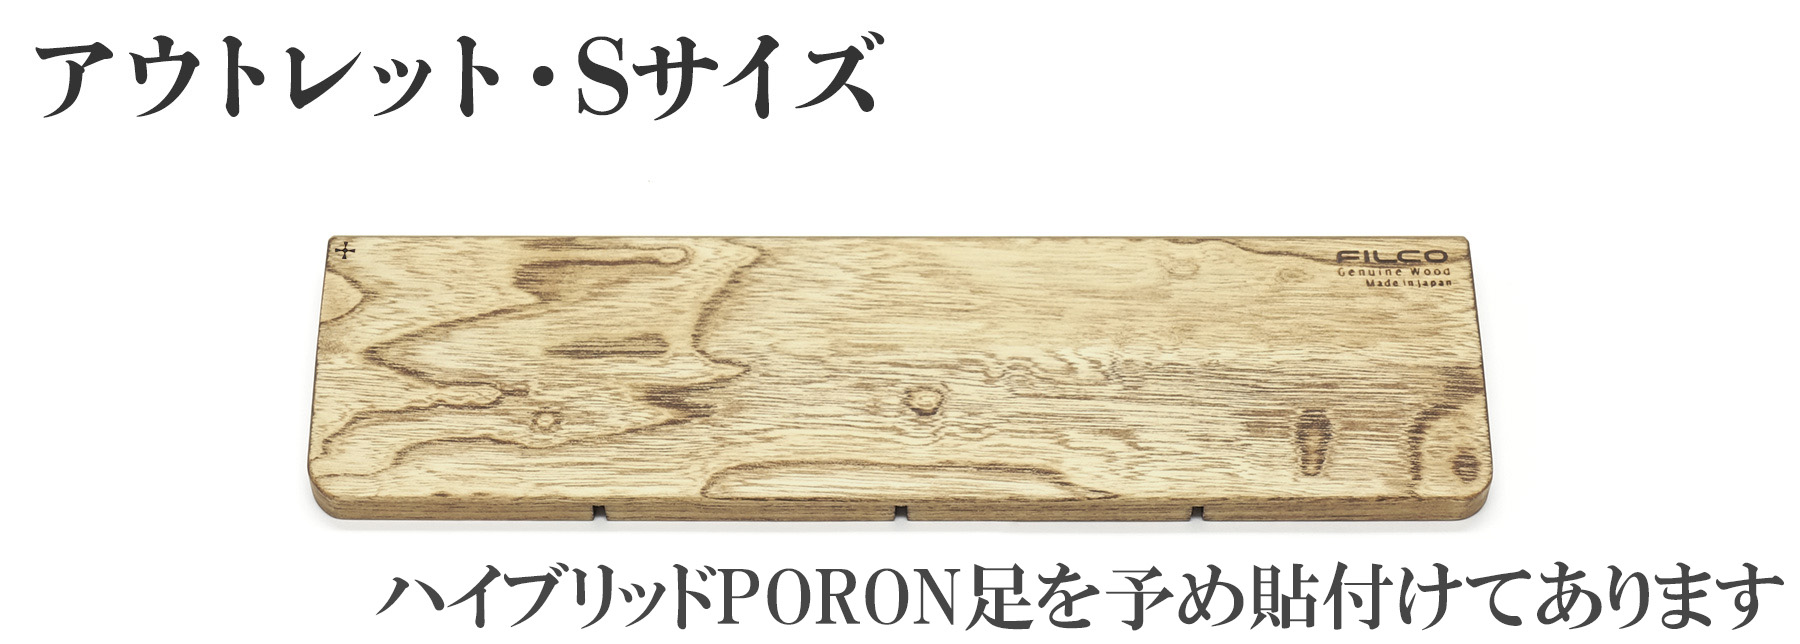 北海道産天然木 FILCO Genuine Wood Wrist Rest S size【アウトレット品】 ハイブリッドPORON足を予め貼付